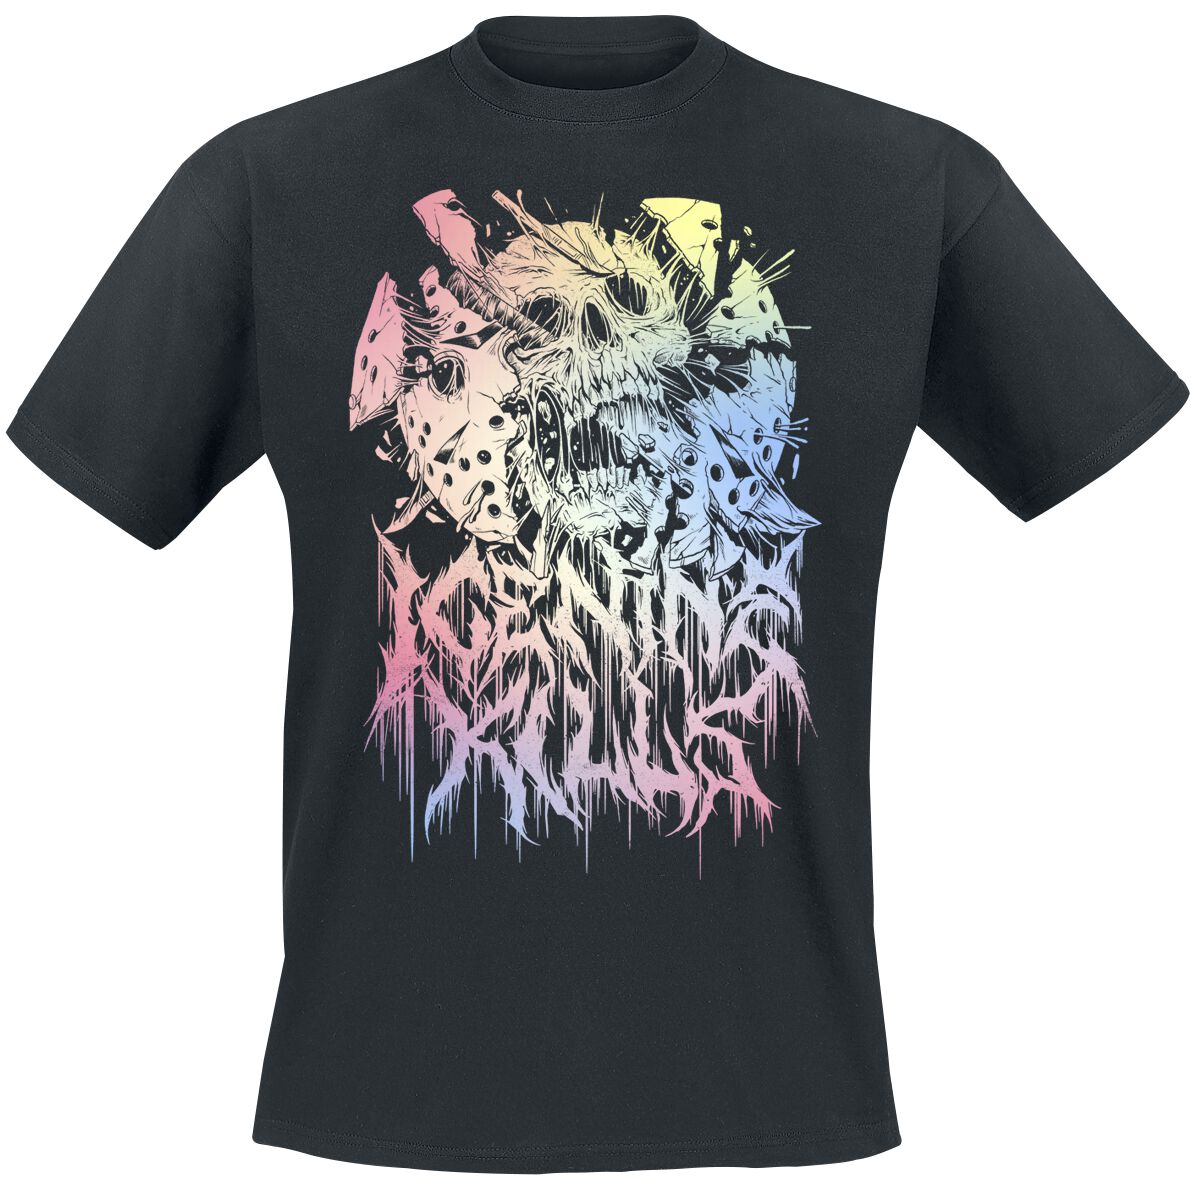 Ice Nine Kills T-Shirt - Pastel Skull - M bis 4XL - für Männer - Größe XL - schwarz  - Lizenziertes Merchandise!